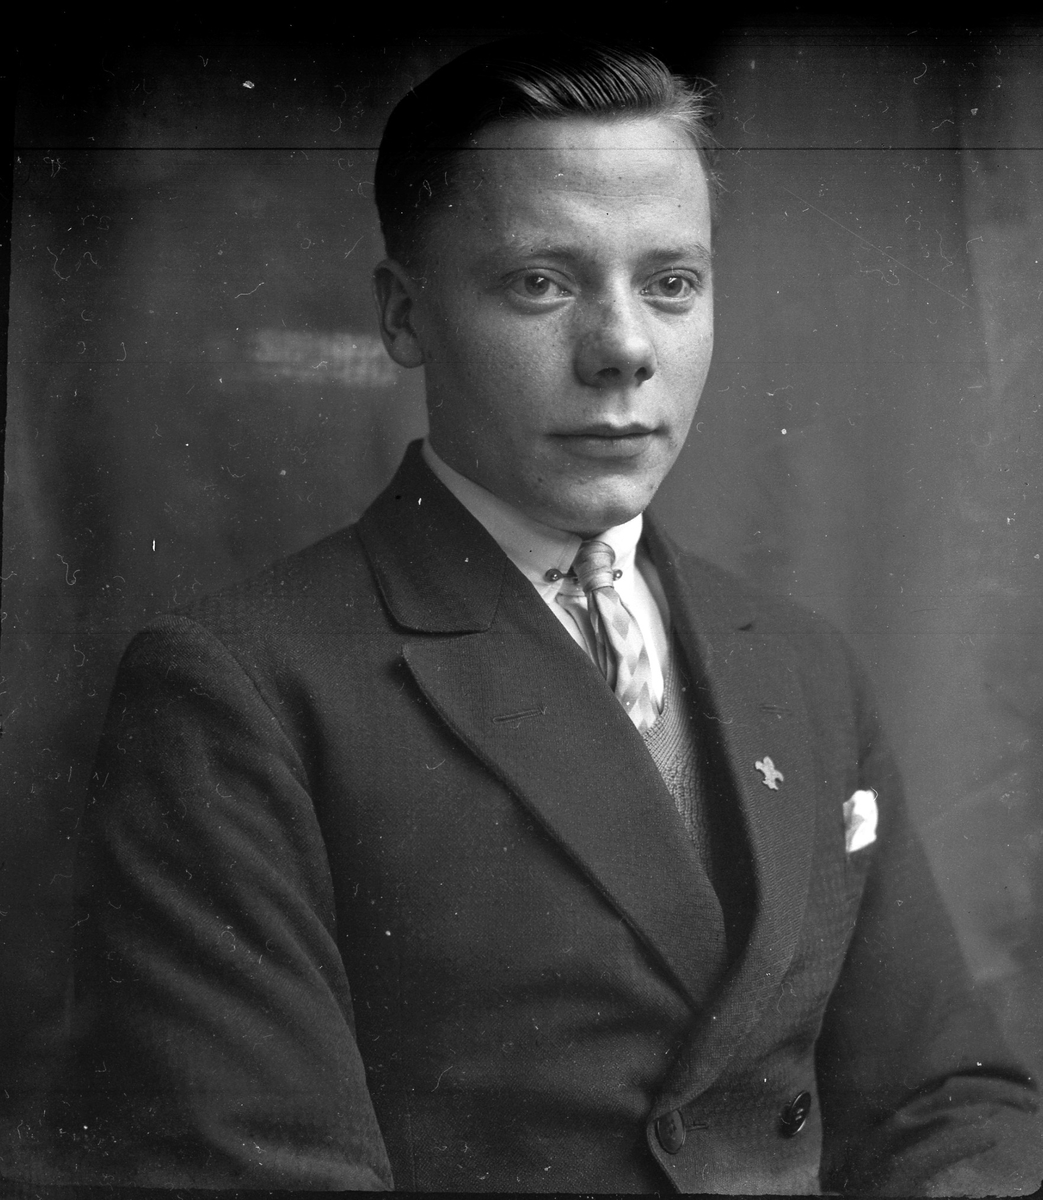 Porträtt av en ung man med slips, skjorta, väst och kavaj. I fotografens egna anteckningar står det "Åke Thorsell". Tolkat som Åke Gustaf Kristian Thorsell (f. 1911).